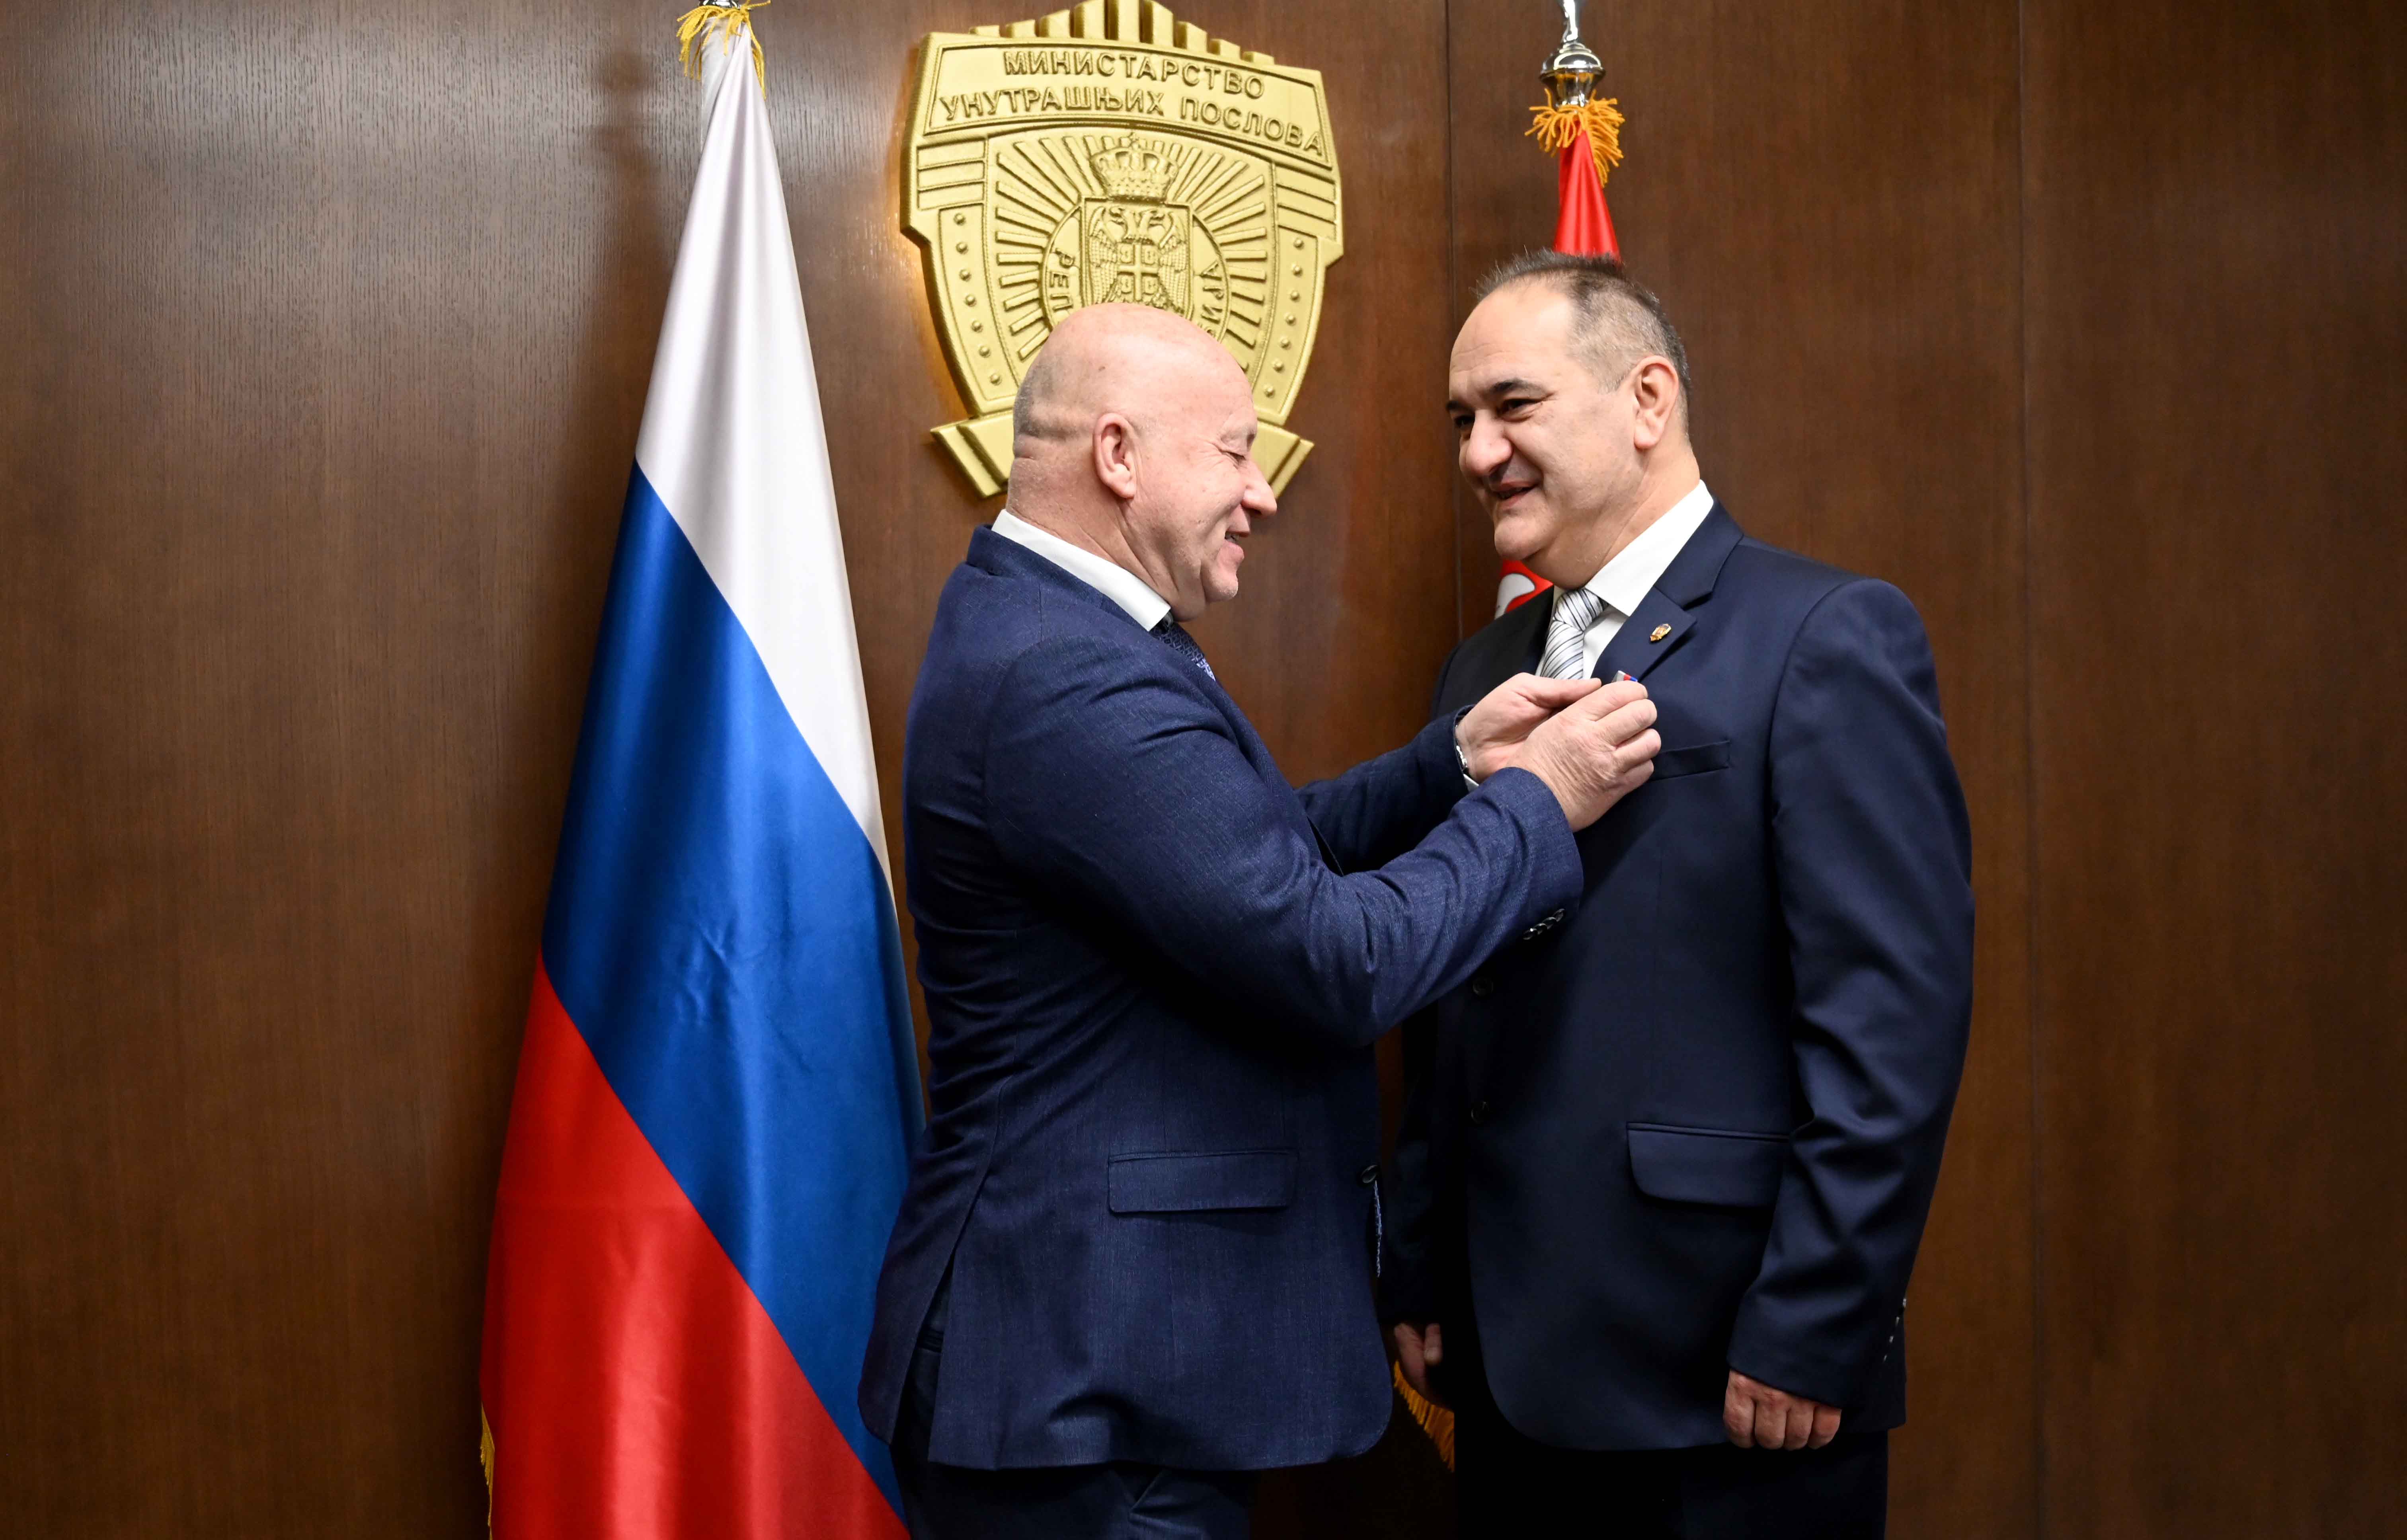 Државном секретару Министарства унутрашњих послова Бојану Јоцићу данас је уручена медаља руске државне корпорације „Ростех“